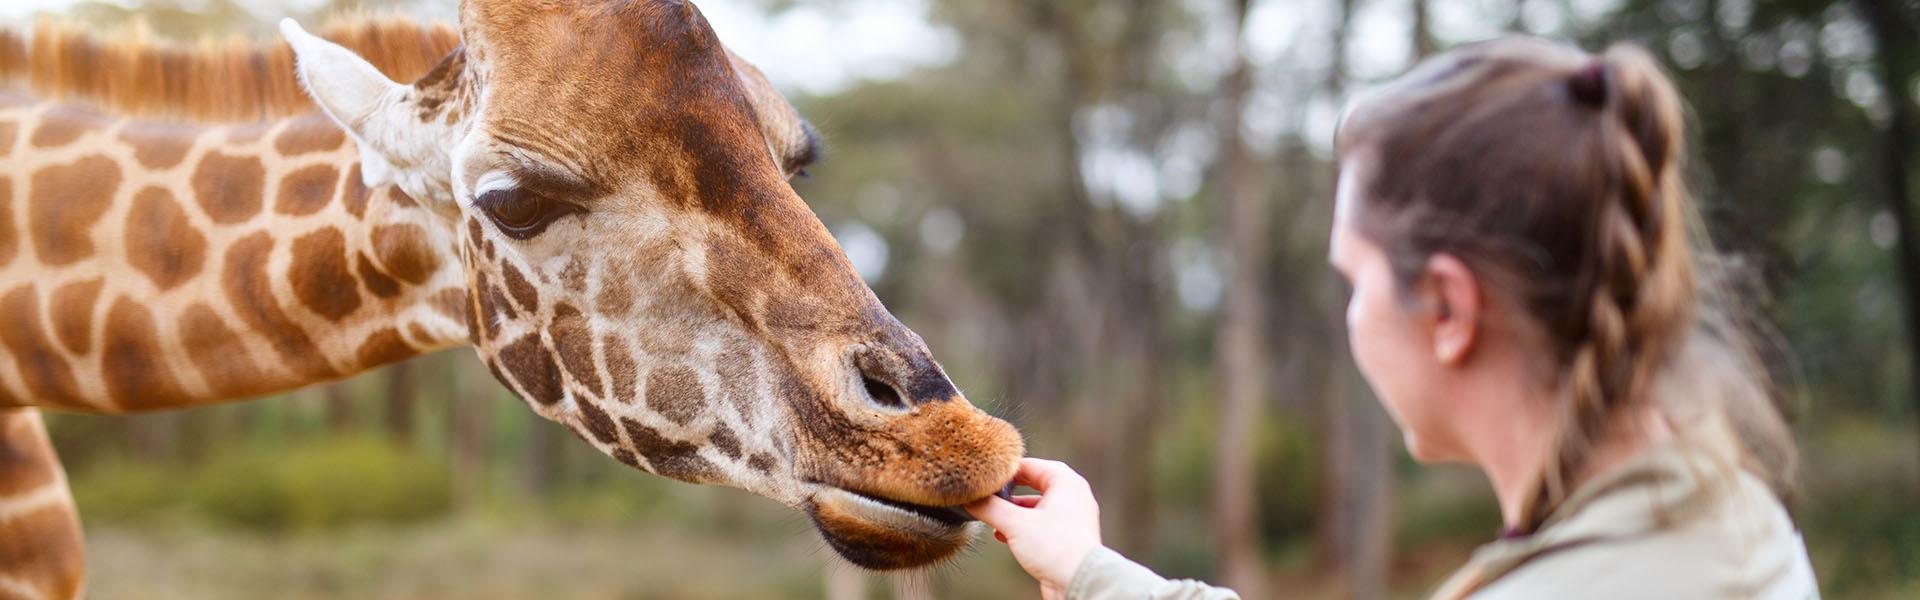 A woman feeds a giraffe